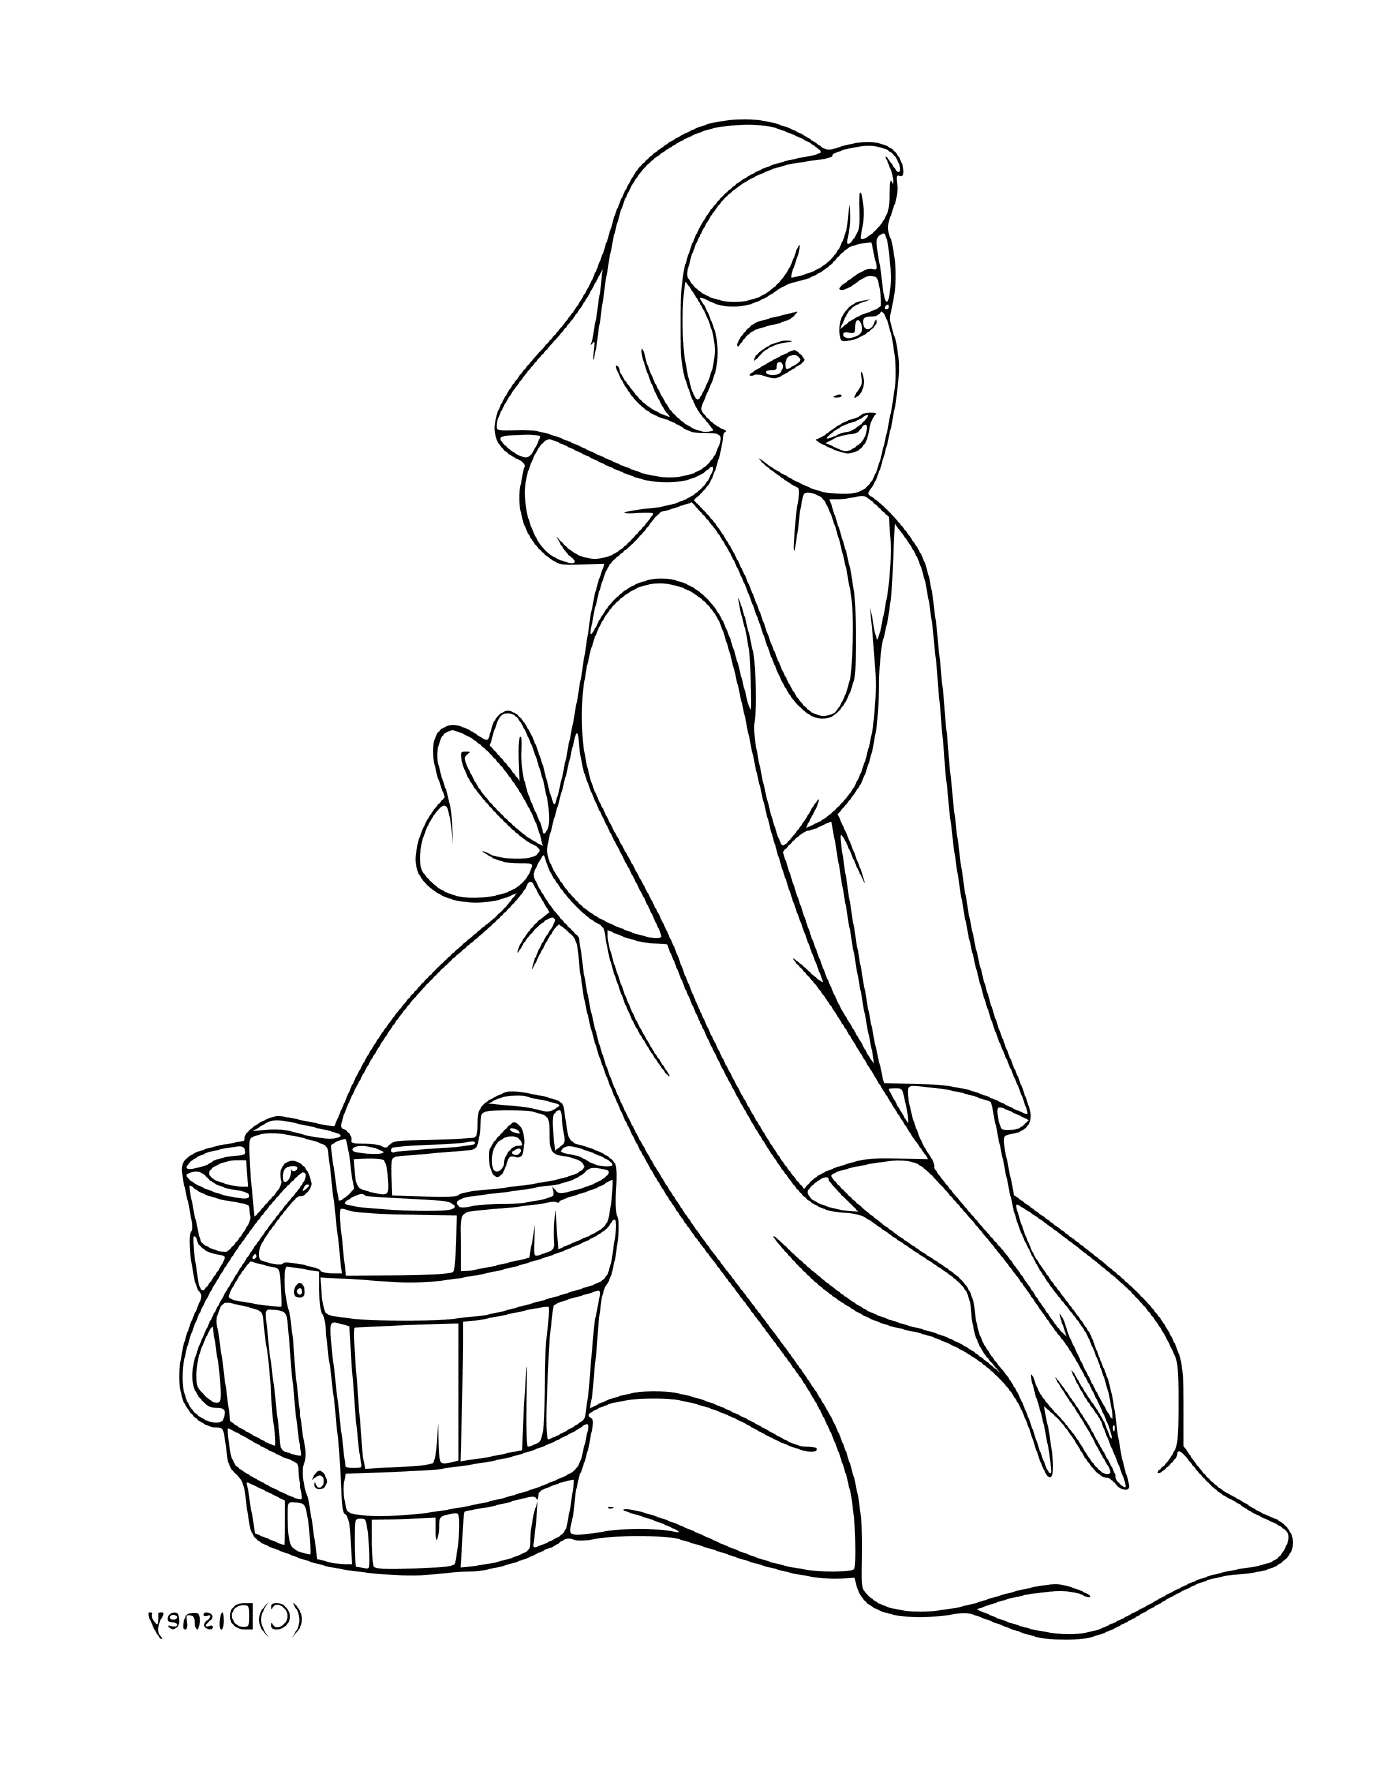  Cinderela realizando tarefas domésticas com um balde 